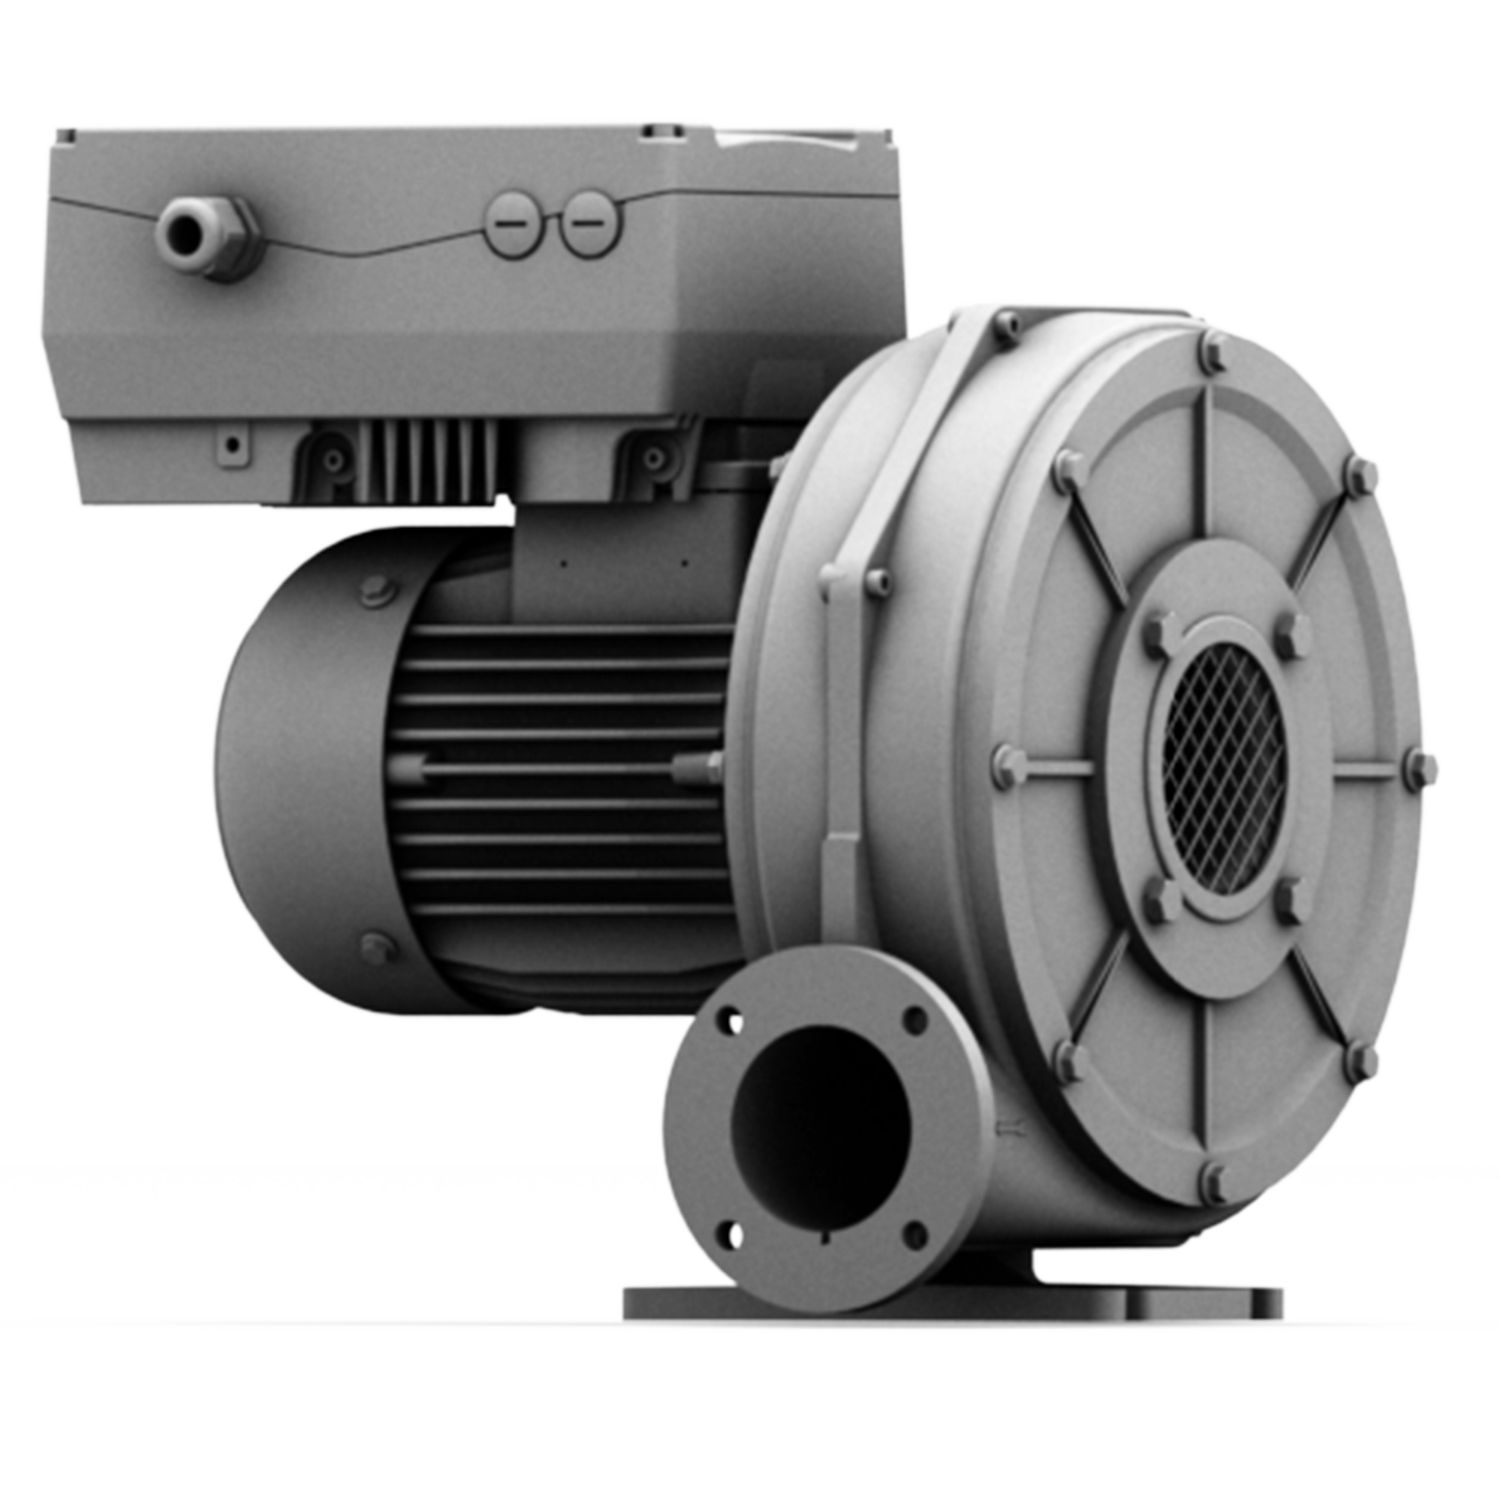 Hrd 1t fu - ventilateur atex - elektror - jusqu'à 97 m³/min_0